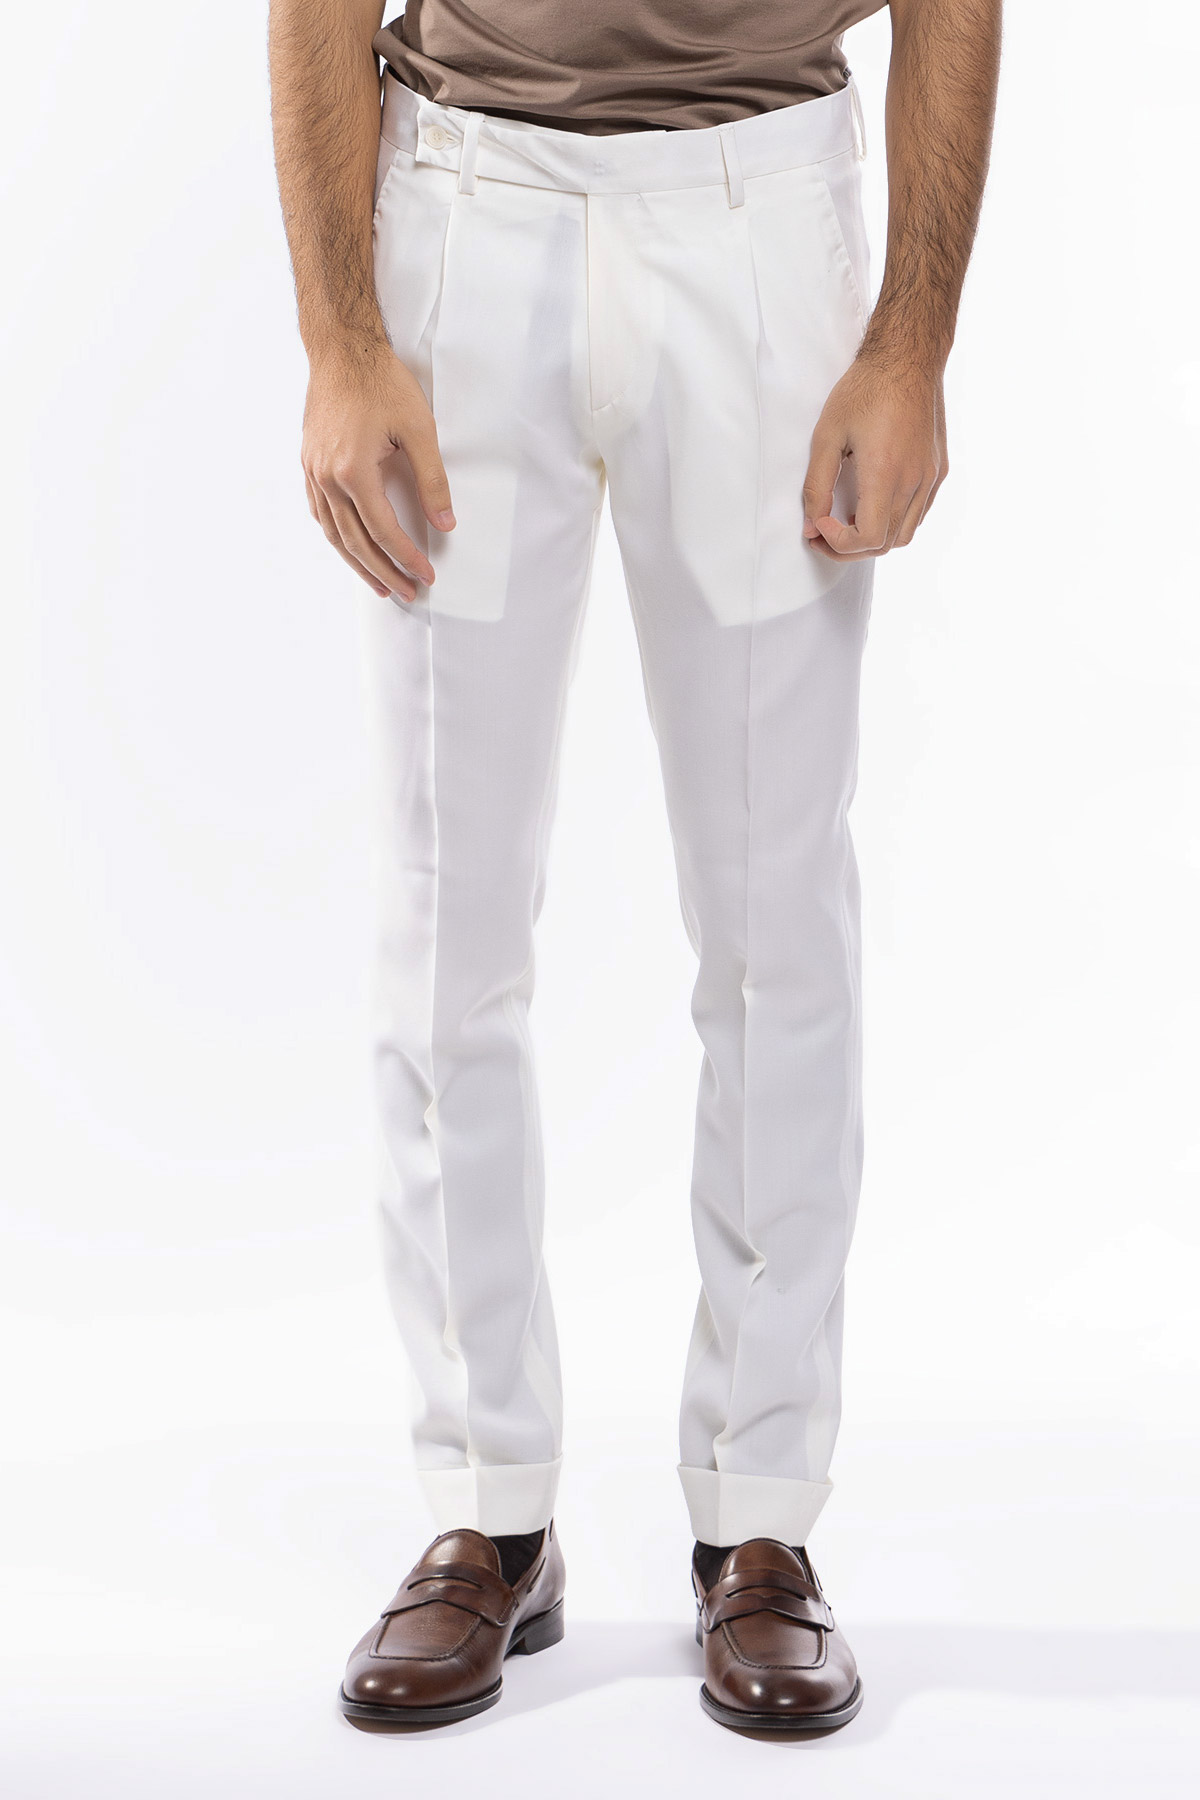 Pantalone uomo Bianco fresco lana super 130's tasca america con una pinces e risvolto 4cm